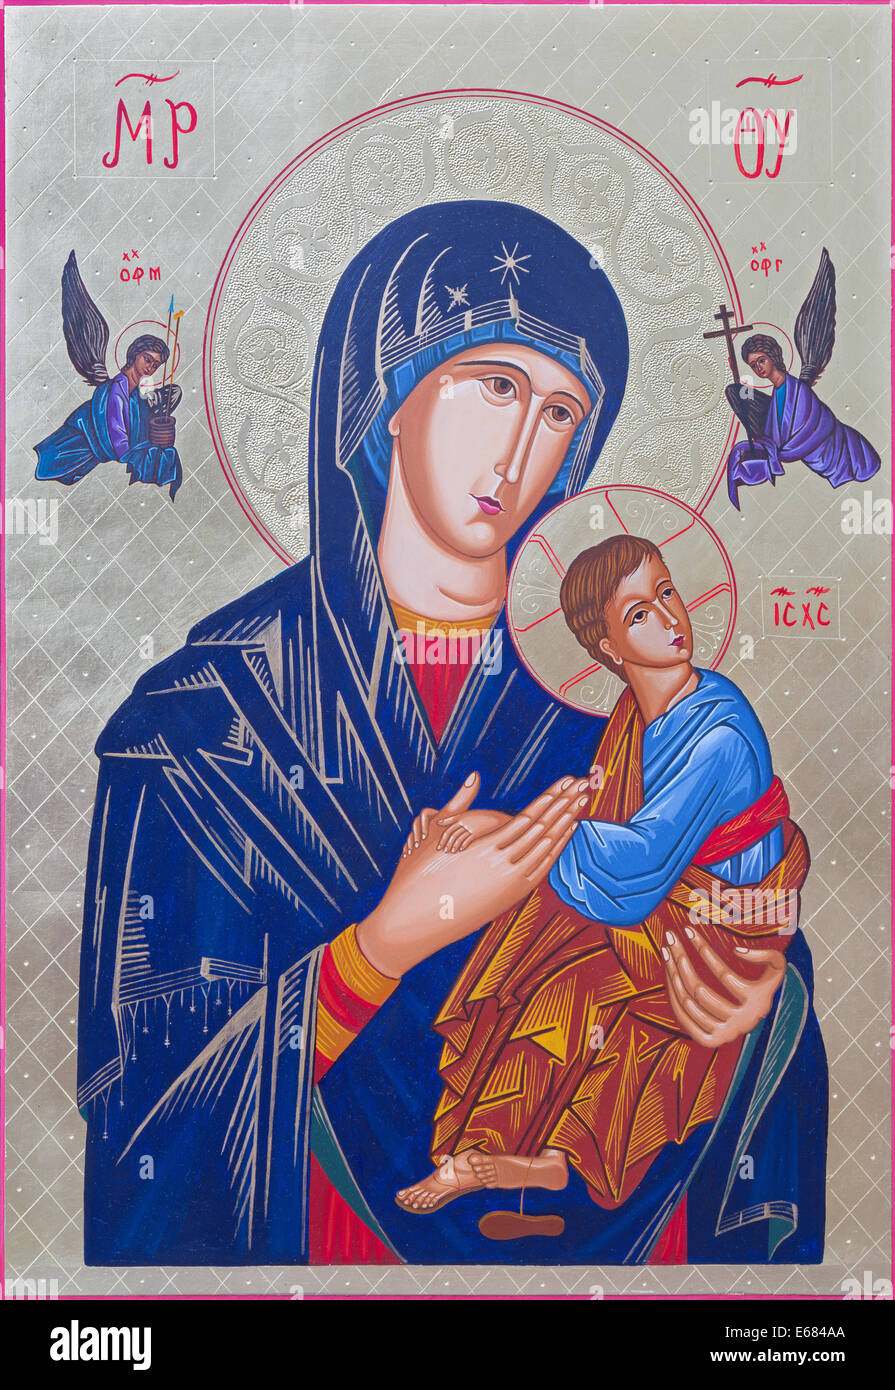 ROZNAVA, SLOVAQUIE - Juillet 21, 2014 : l'icône de la Vierge à l'enfant par Peter Nedoroscik 2004. Banque D'Images